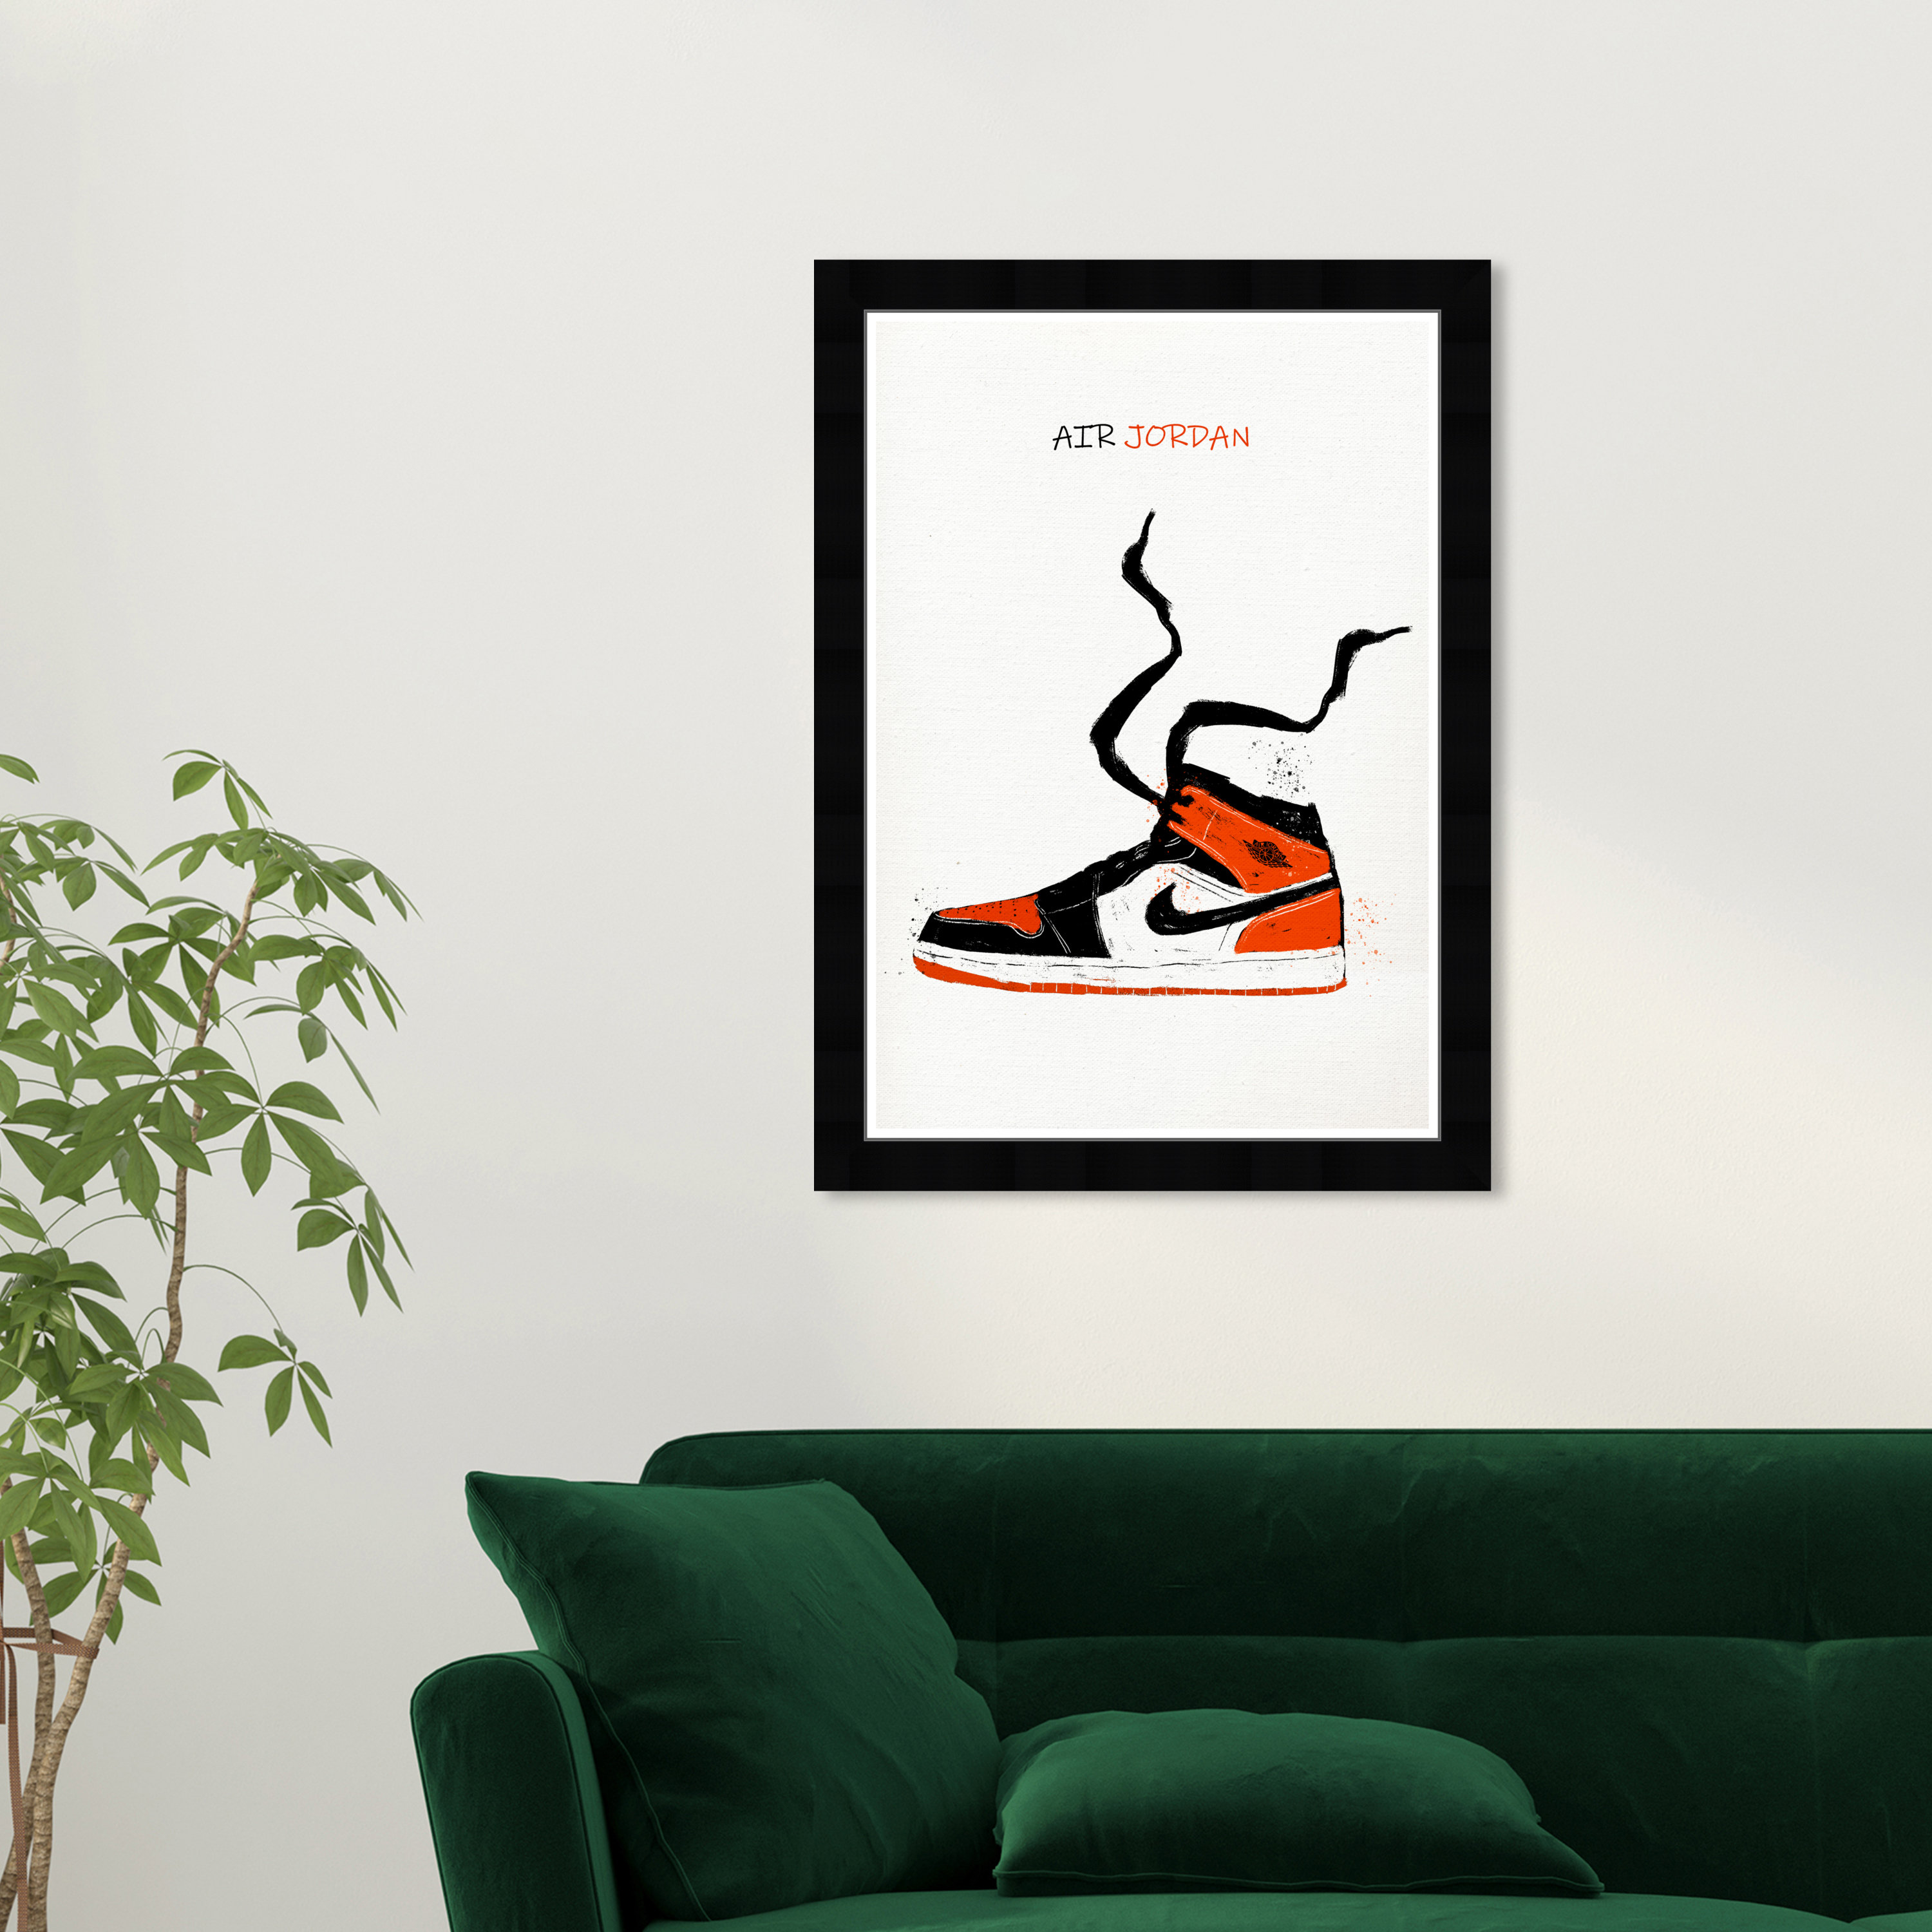 Nike Air Jordan 6 Sneaker Washable Area Living Room Rug Bedroom